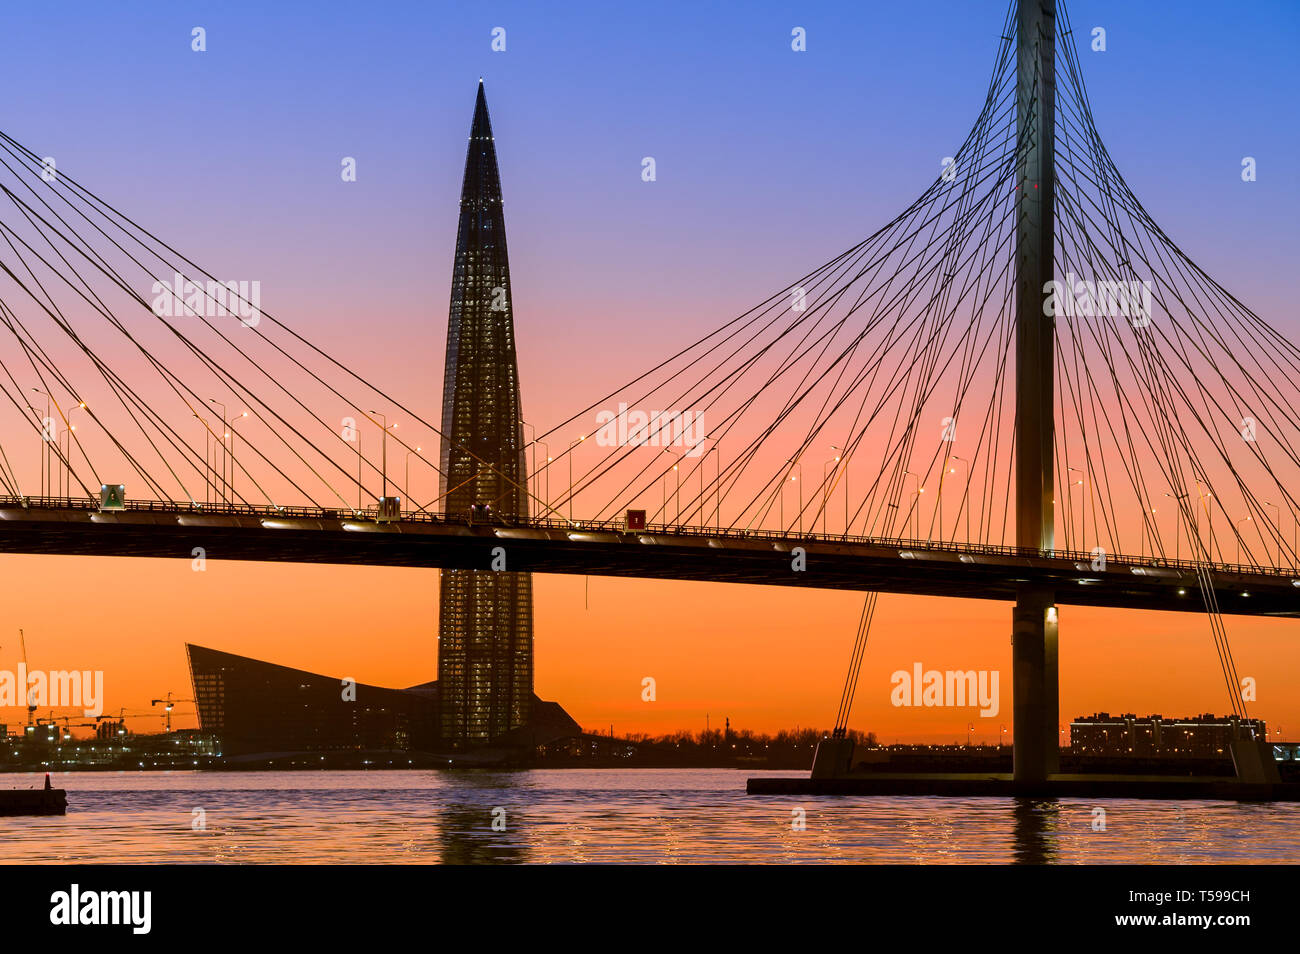 Höchste Turm von Sankt-petersburg und Autobahnbrücke bei Vivid Sonnenuntergang Farben. Russland. Stockfoto